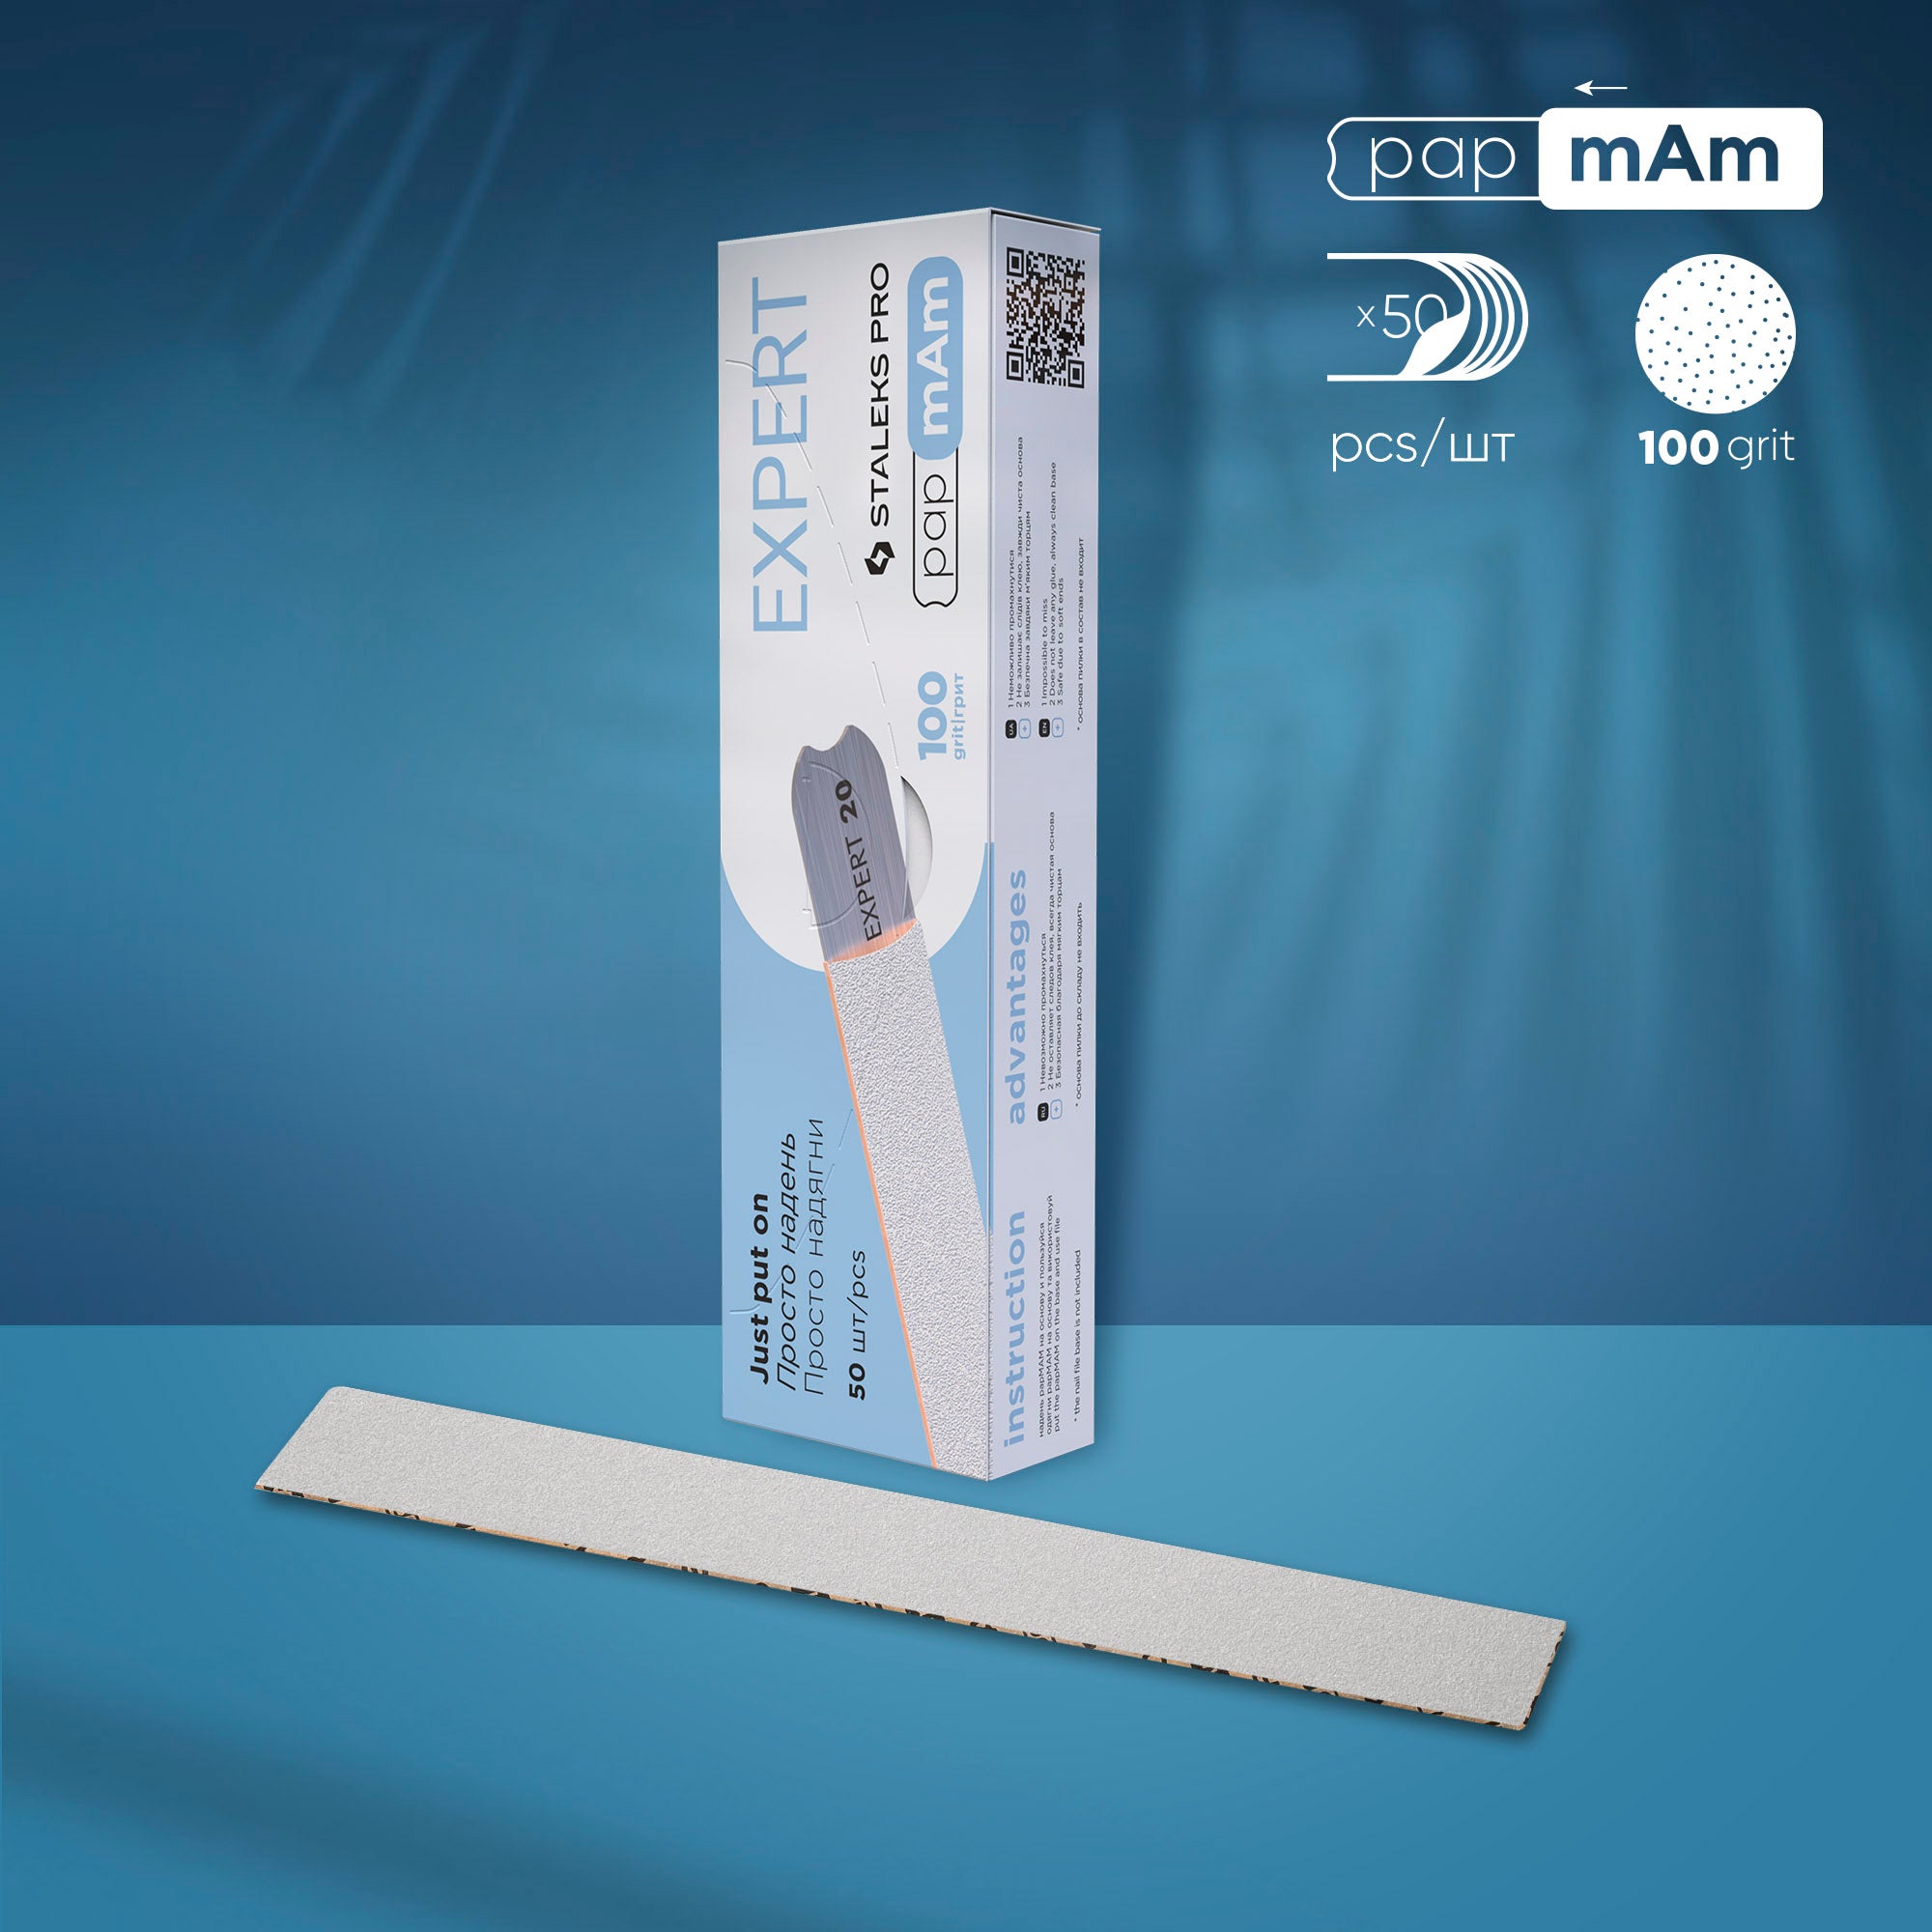 Пилки papmAm білі одноразові для прямої пилки Staleks Pro Expert 22, 100 грит (50 шт) DFCE-22-100w